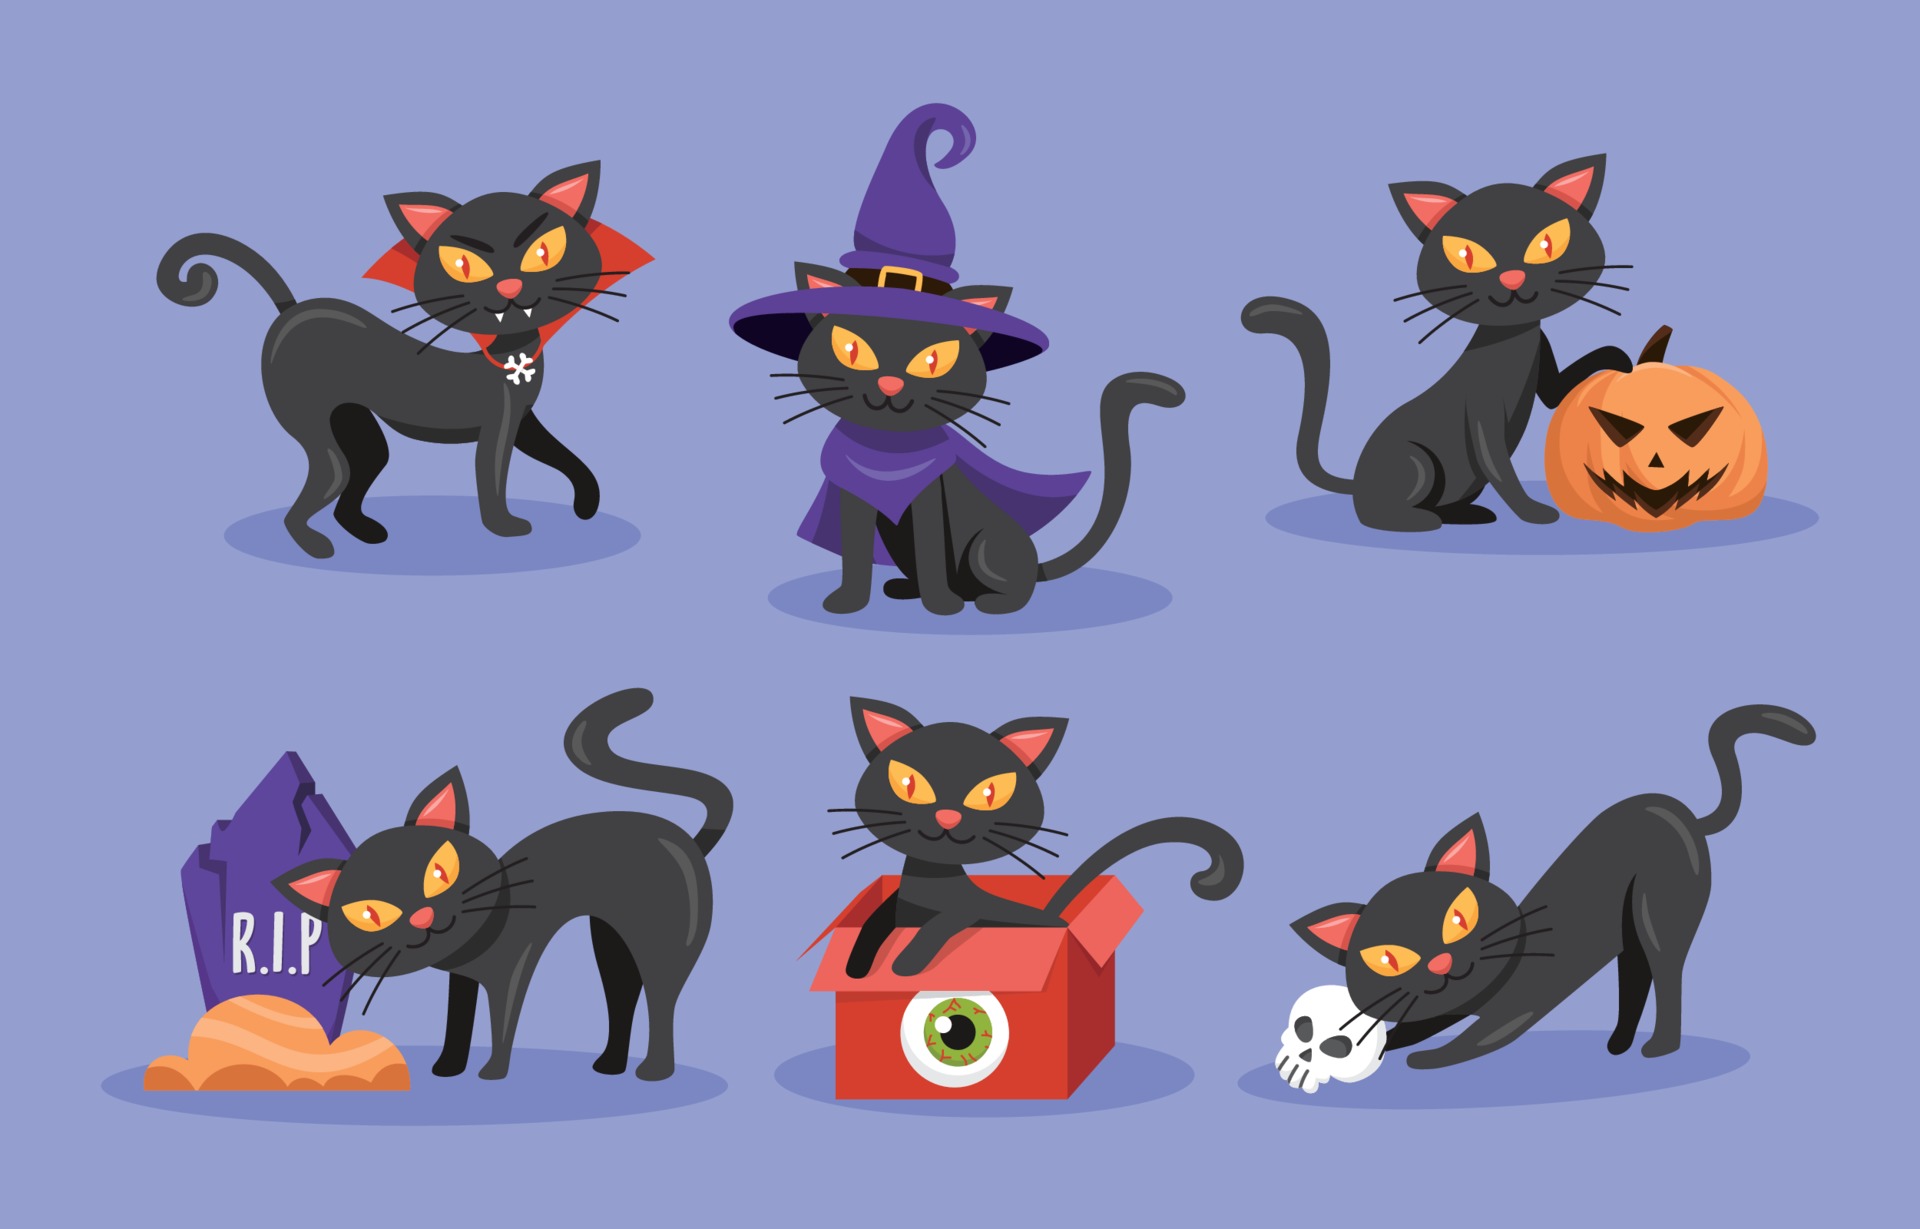 Halloween Black Cat Characters Collection 3127660 Vector Art at Vecteezy